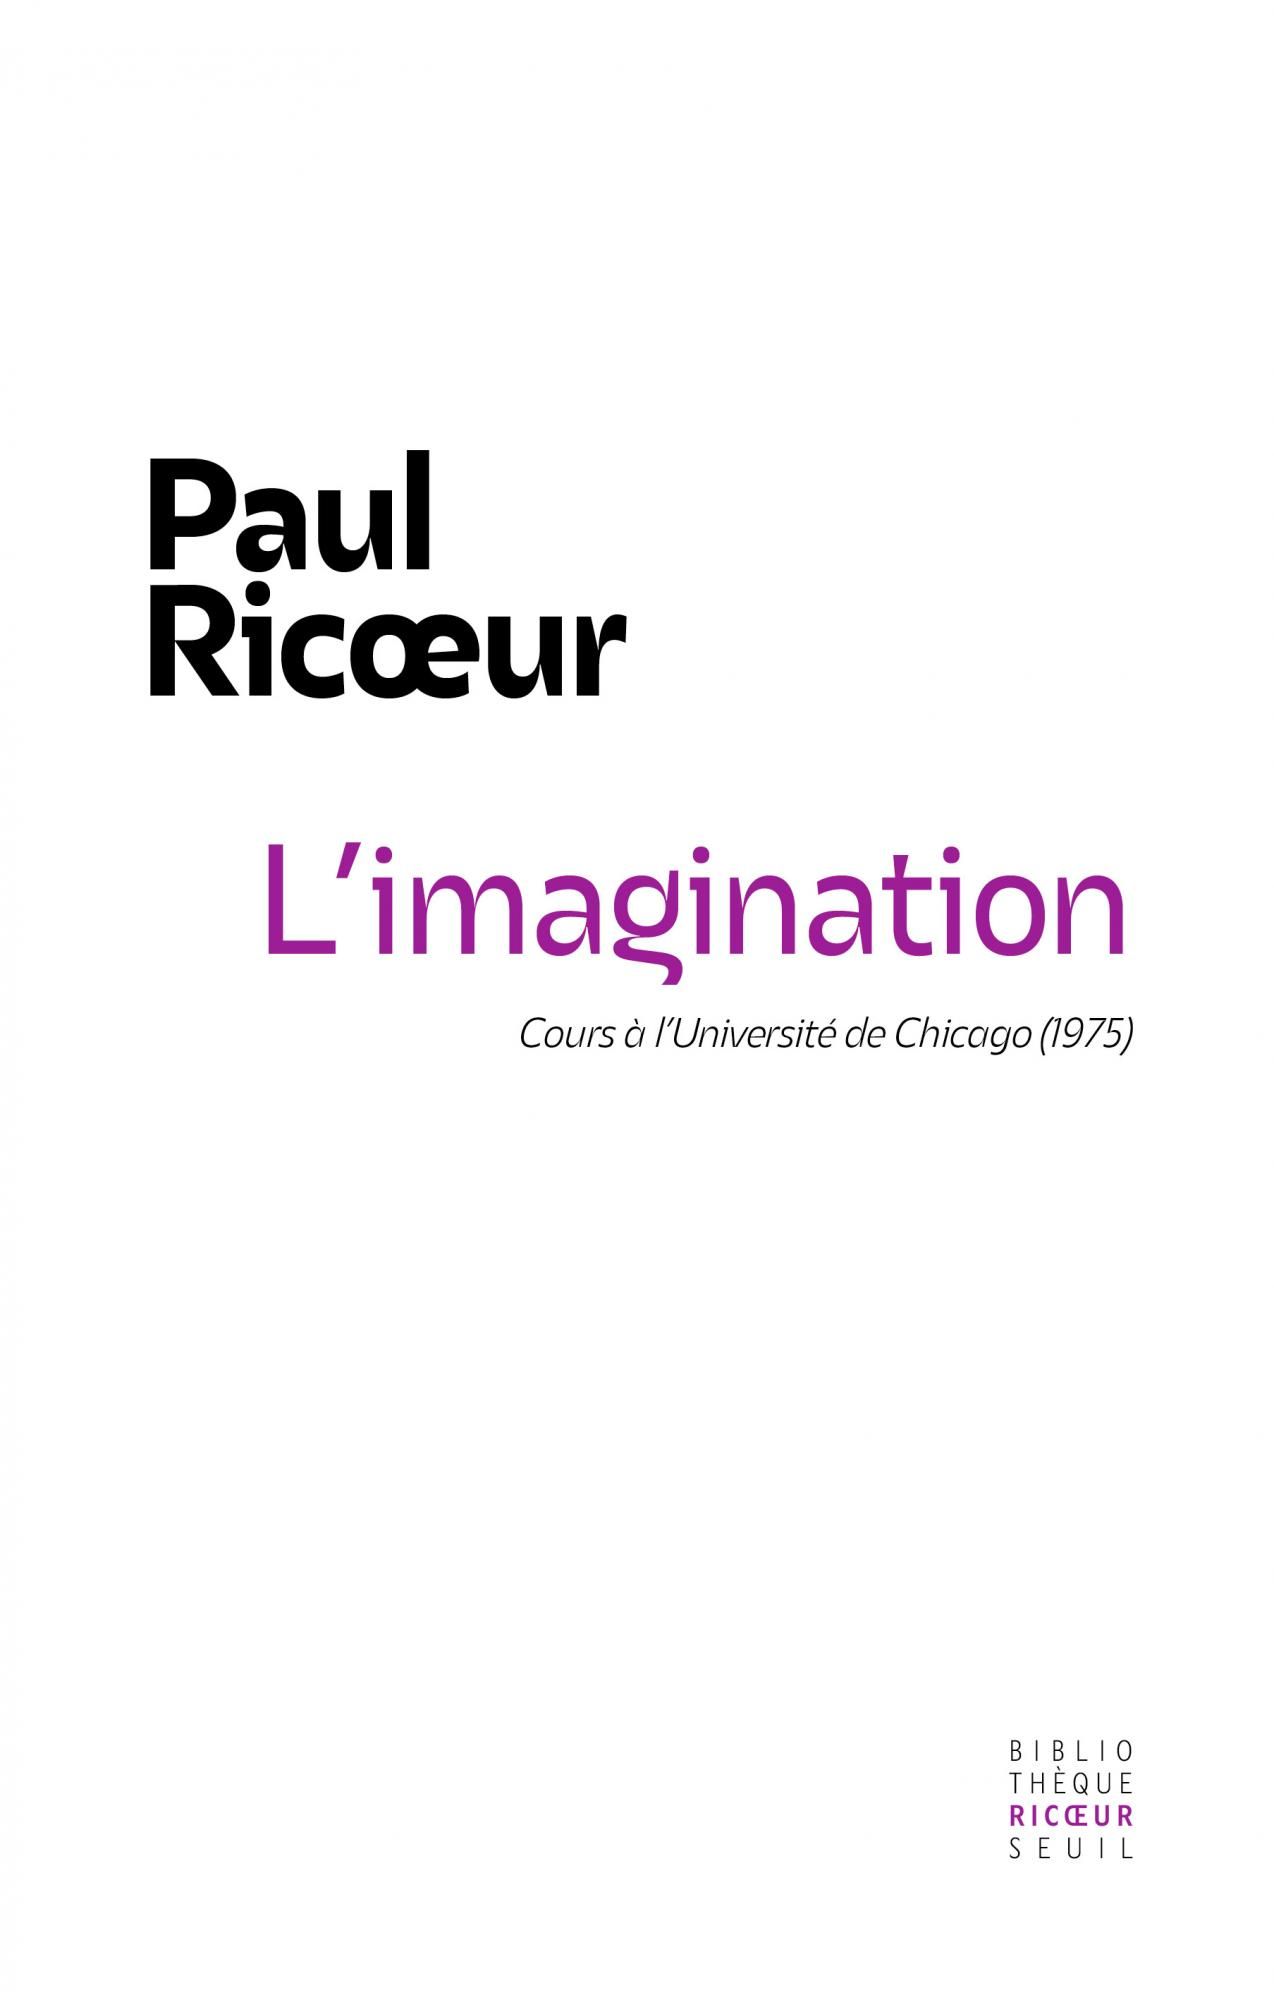 Paul Ricœur, L'Imagination. Cours à l'Université de Chicago (1975)